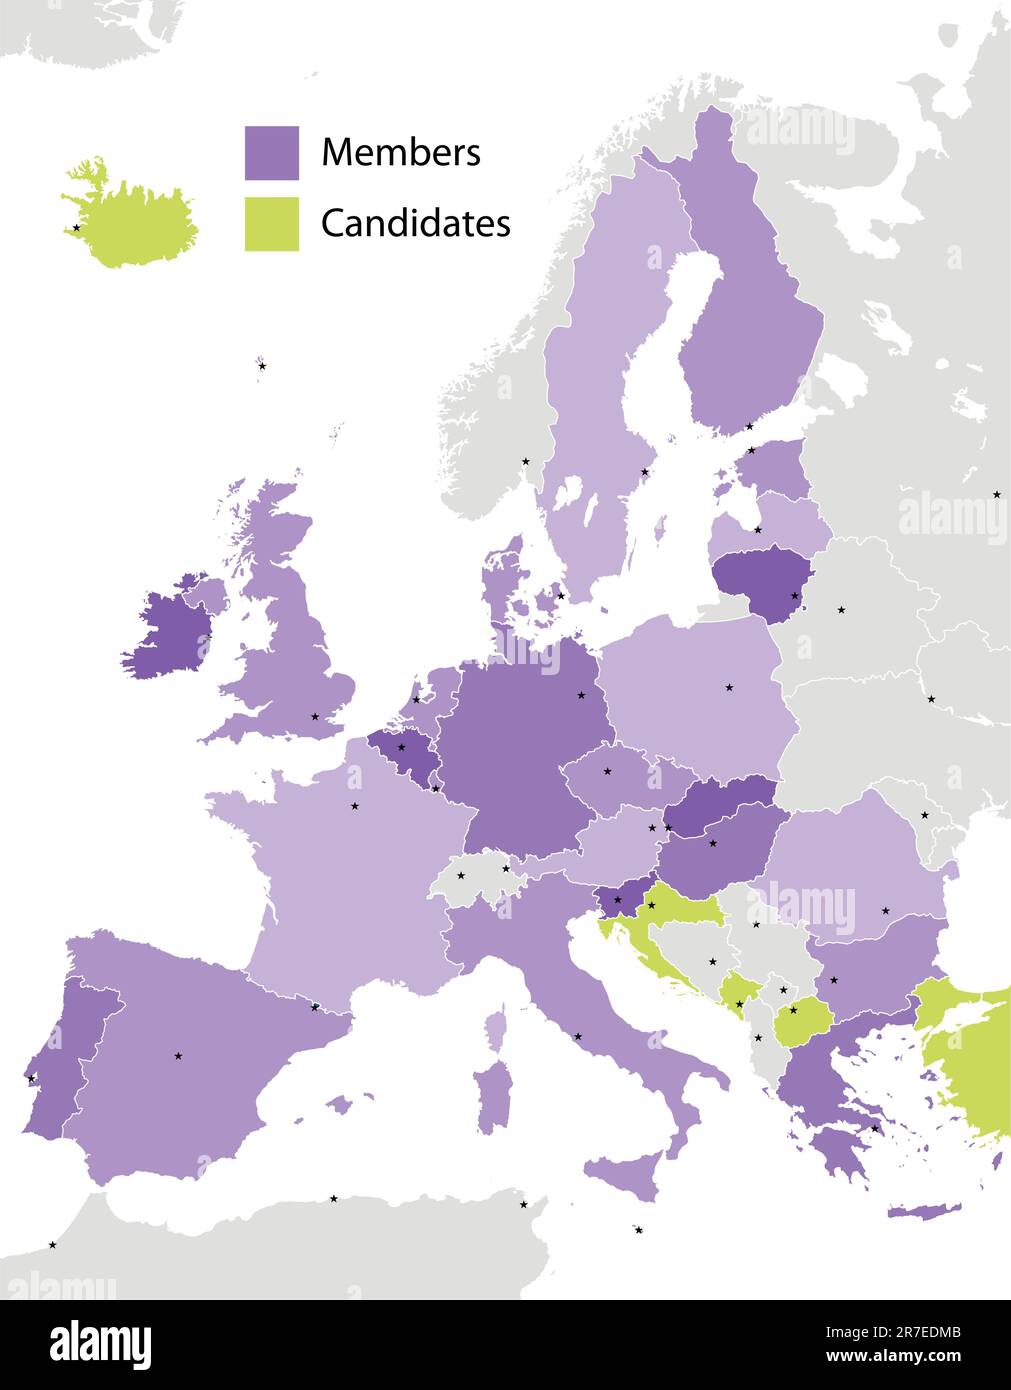 Membri dell'Unione europea e candidati, sagome dei paesi. Il file EPS contiene livelli separati con il nome della contea, i confini e il livello con le contee.... Illustrazione Vettoriale